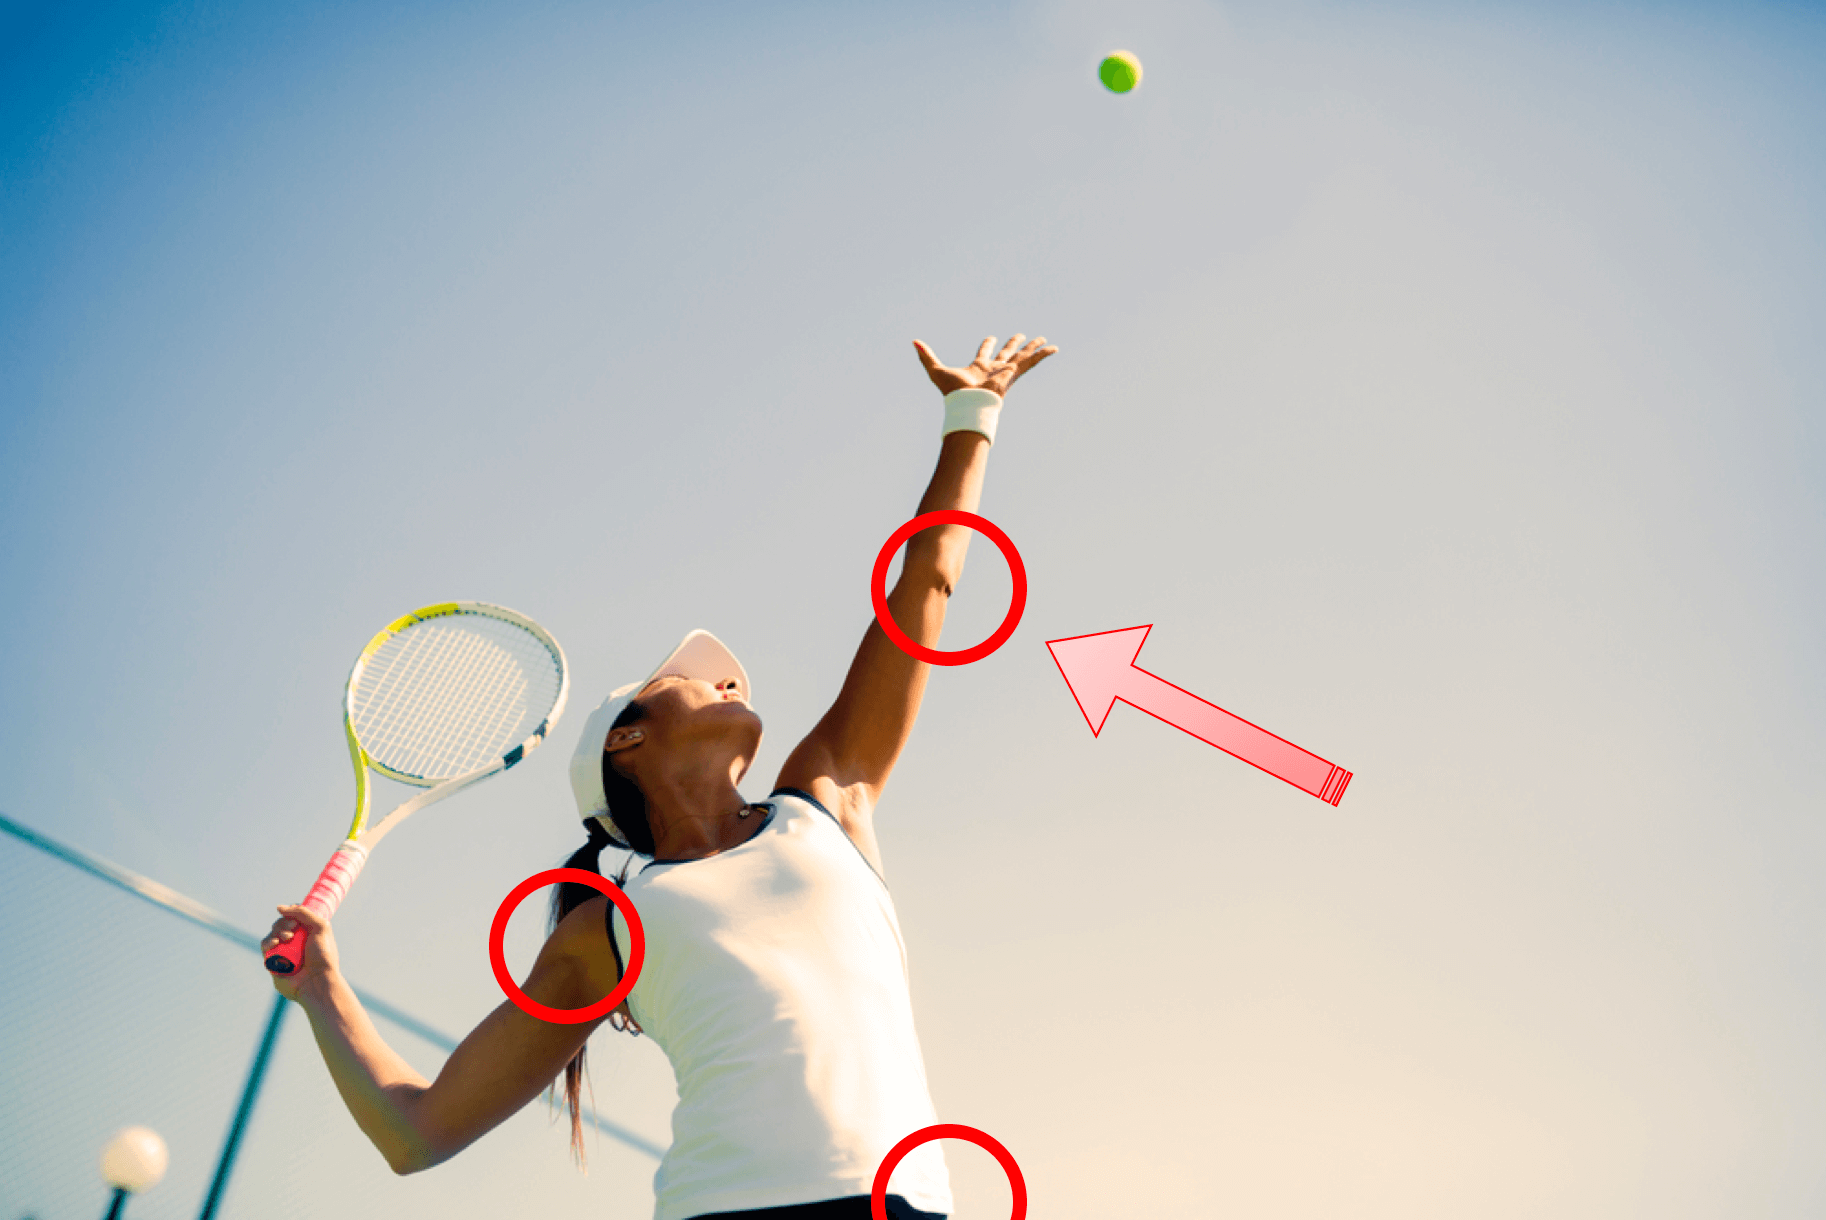 O que usar em… jogos de tênis??